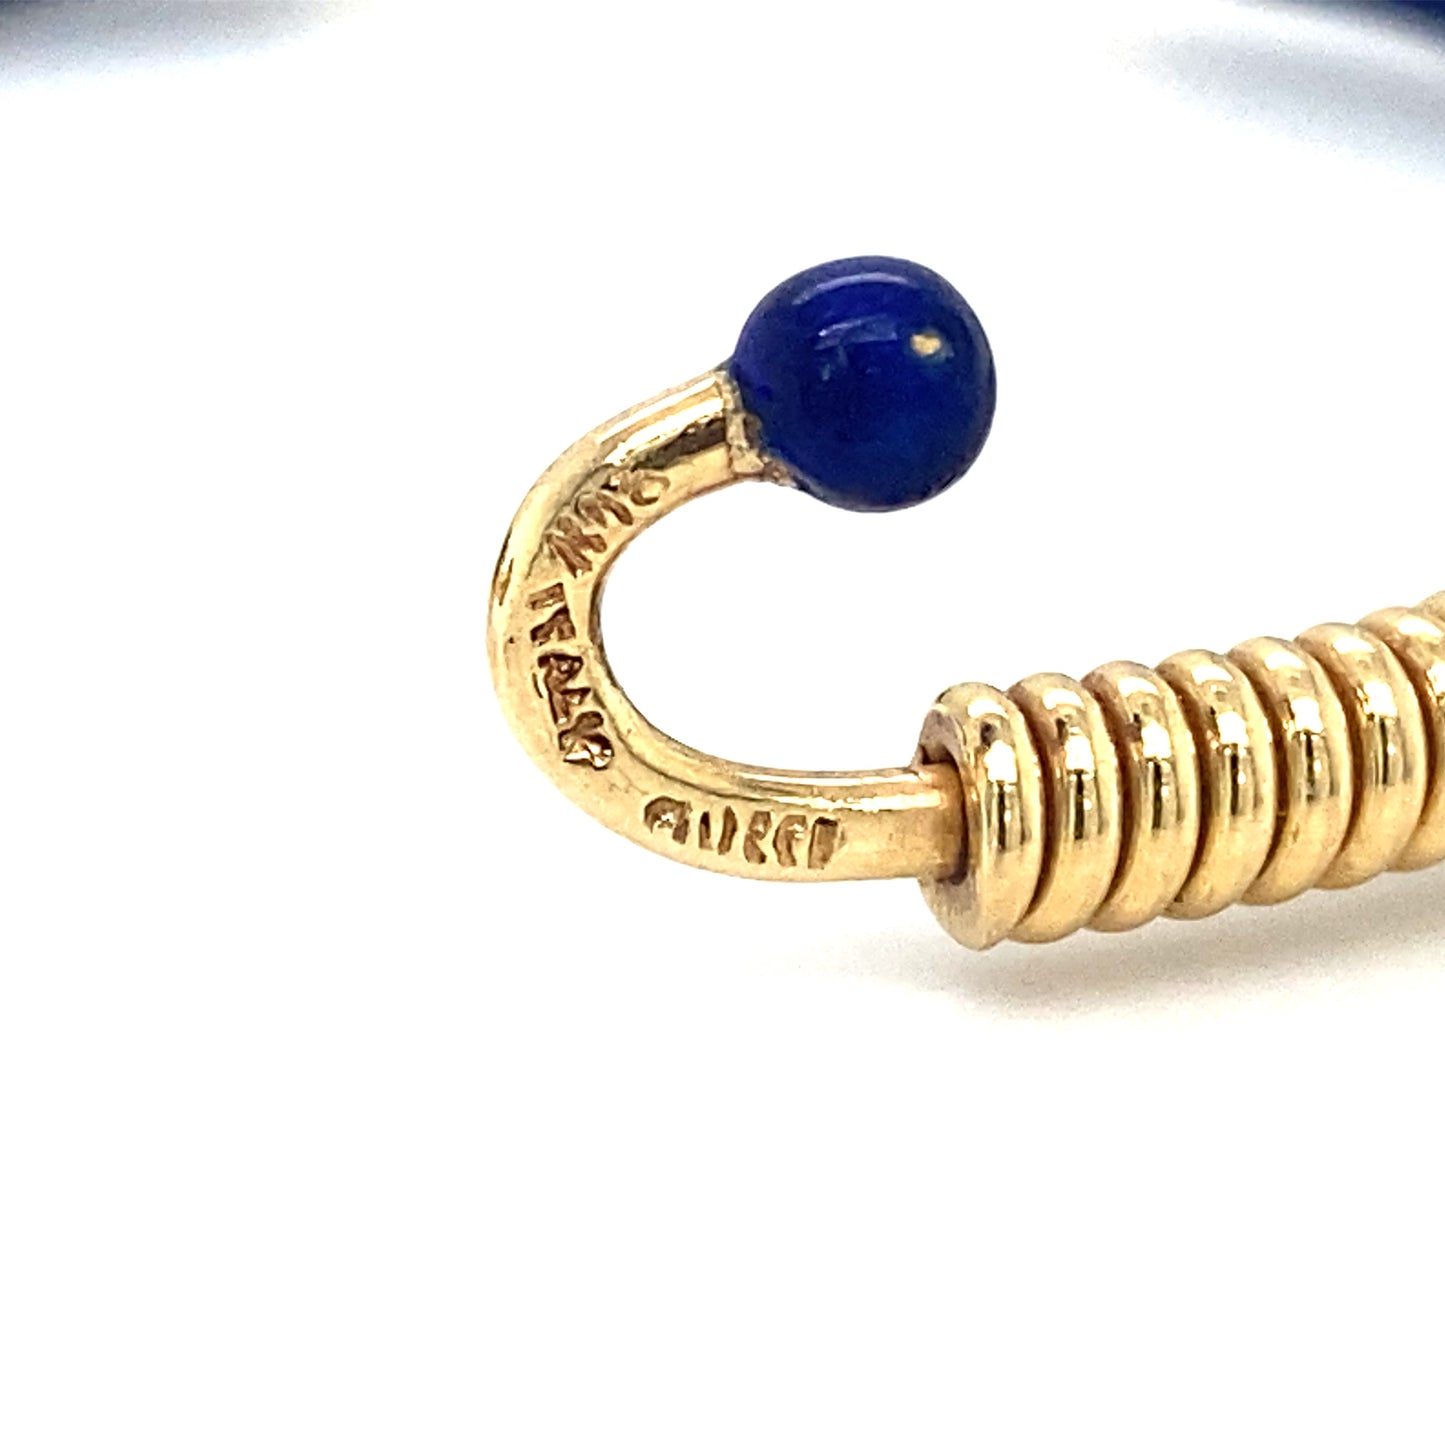 Circa 1980s GUCCI Blue Enamel Twist Bracelet in 18K Gold